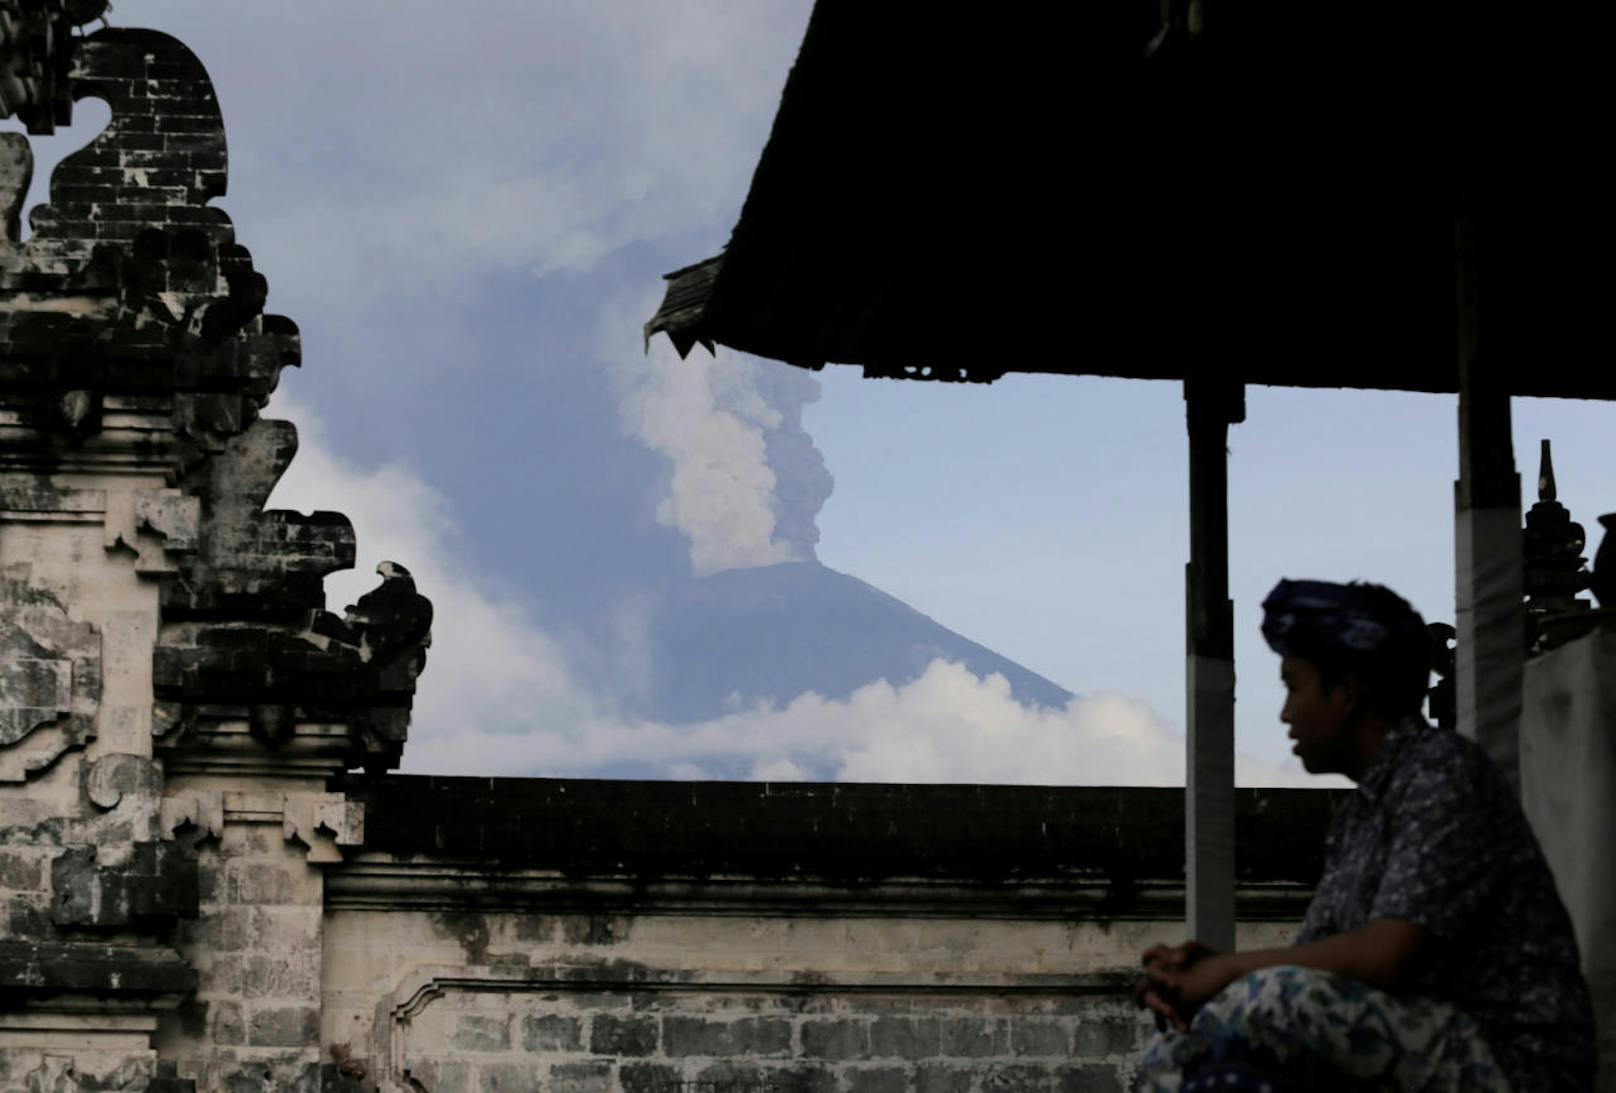 Rettungskräfte sind bereit: Im Hintergrund ist der 3.030 Meter hohe Mount Agung zu sehen.